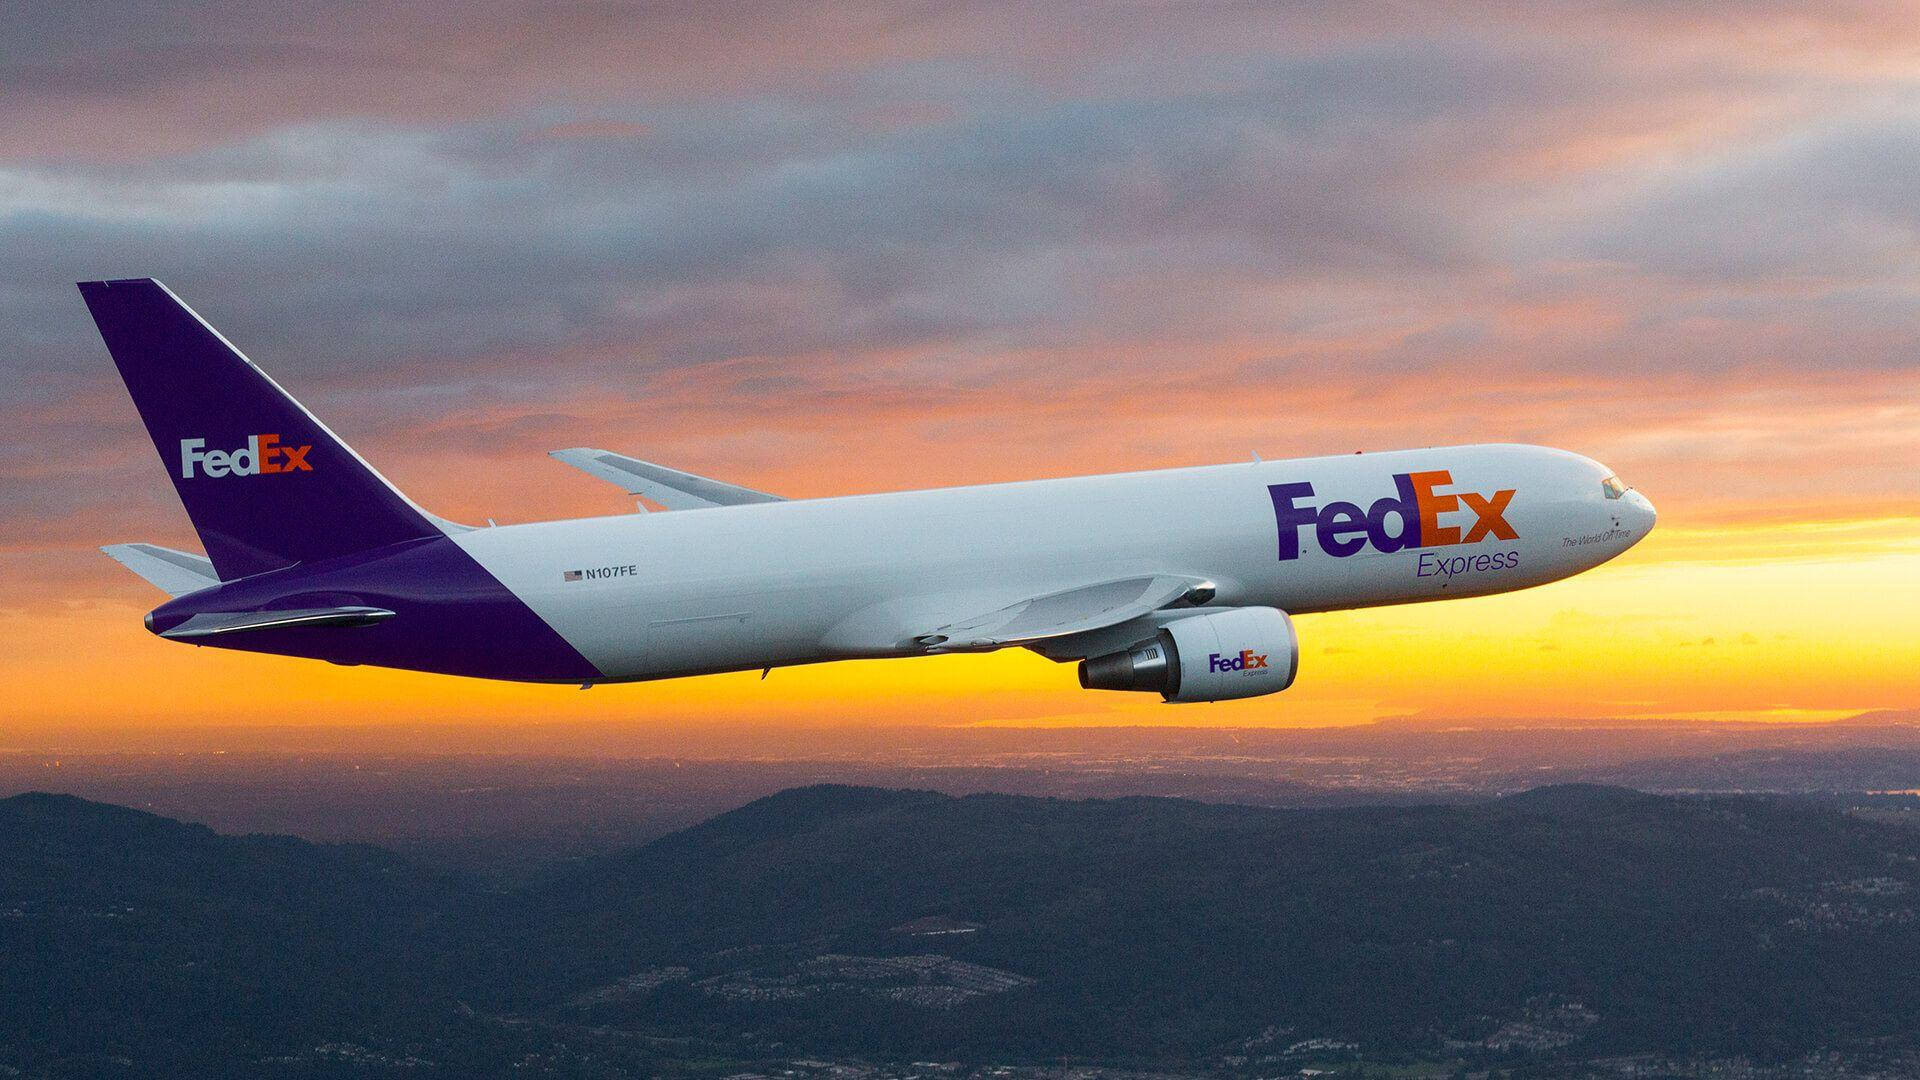 Fedex Express Sunrise Background